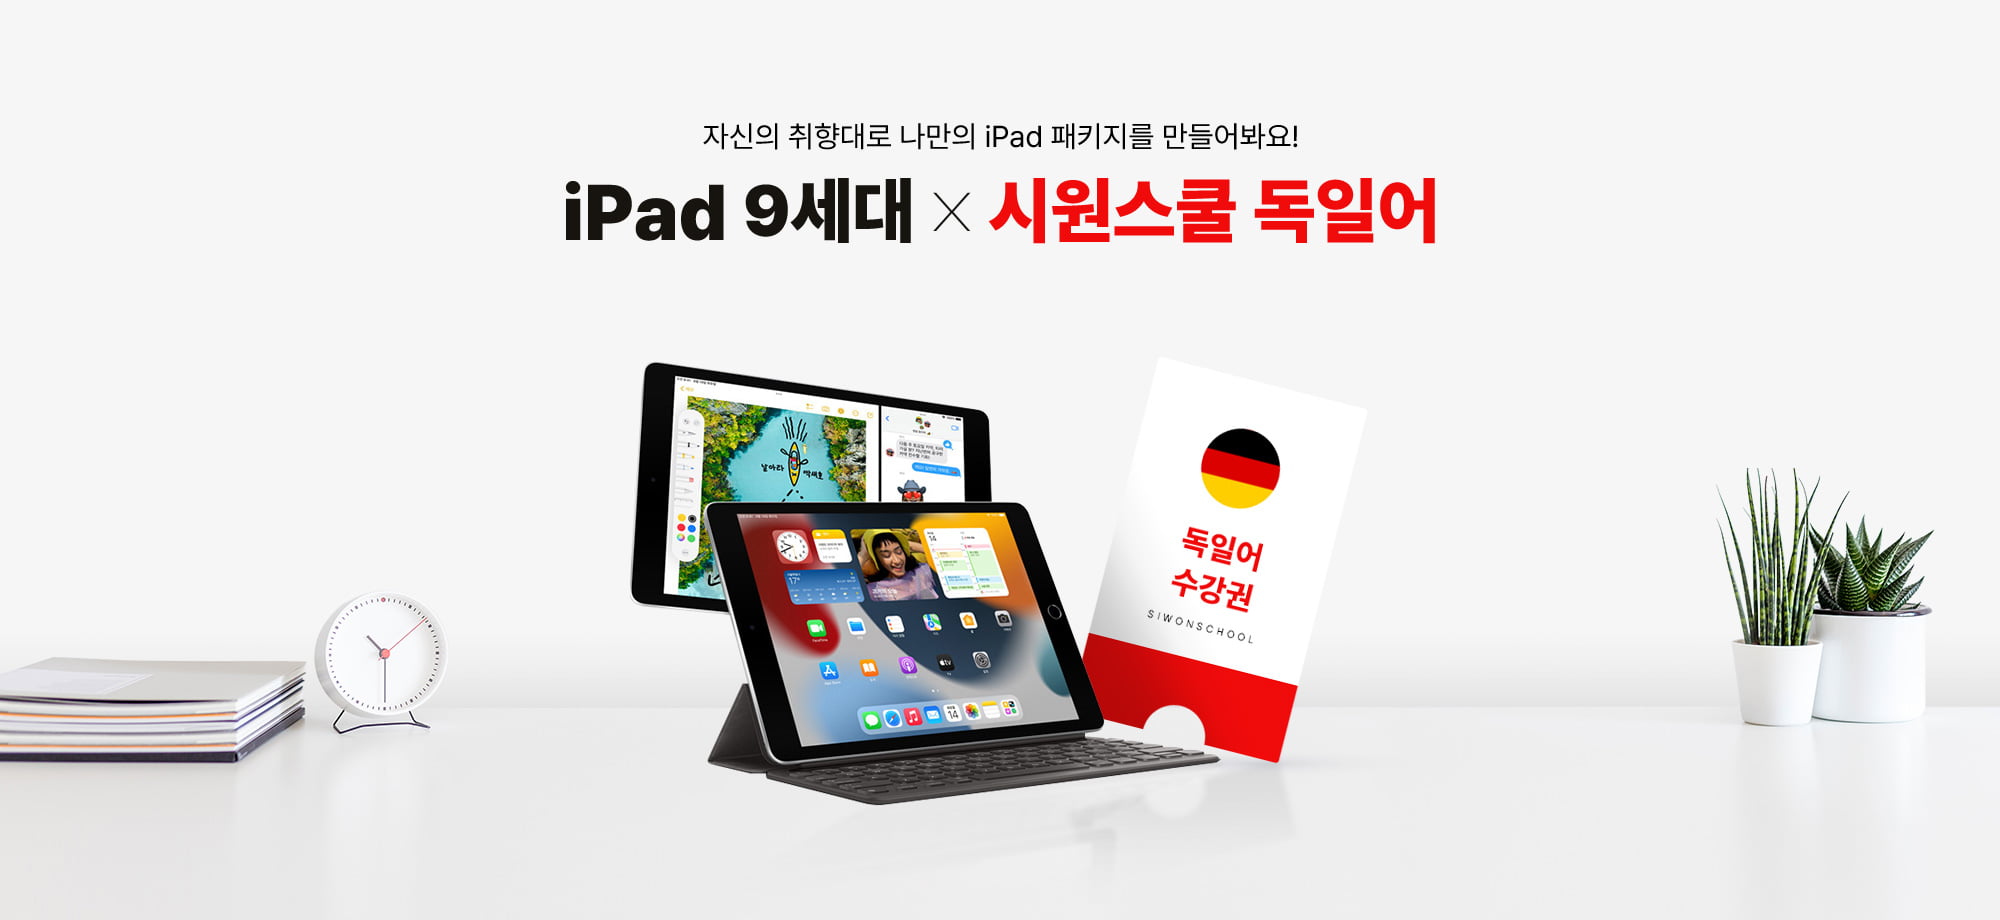 자신의 취향대로 나만의 iPad 패키지를 만들어봐요! iPad9세대 X 시원스쿨 독일어